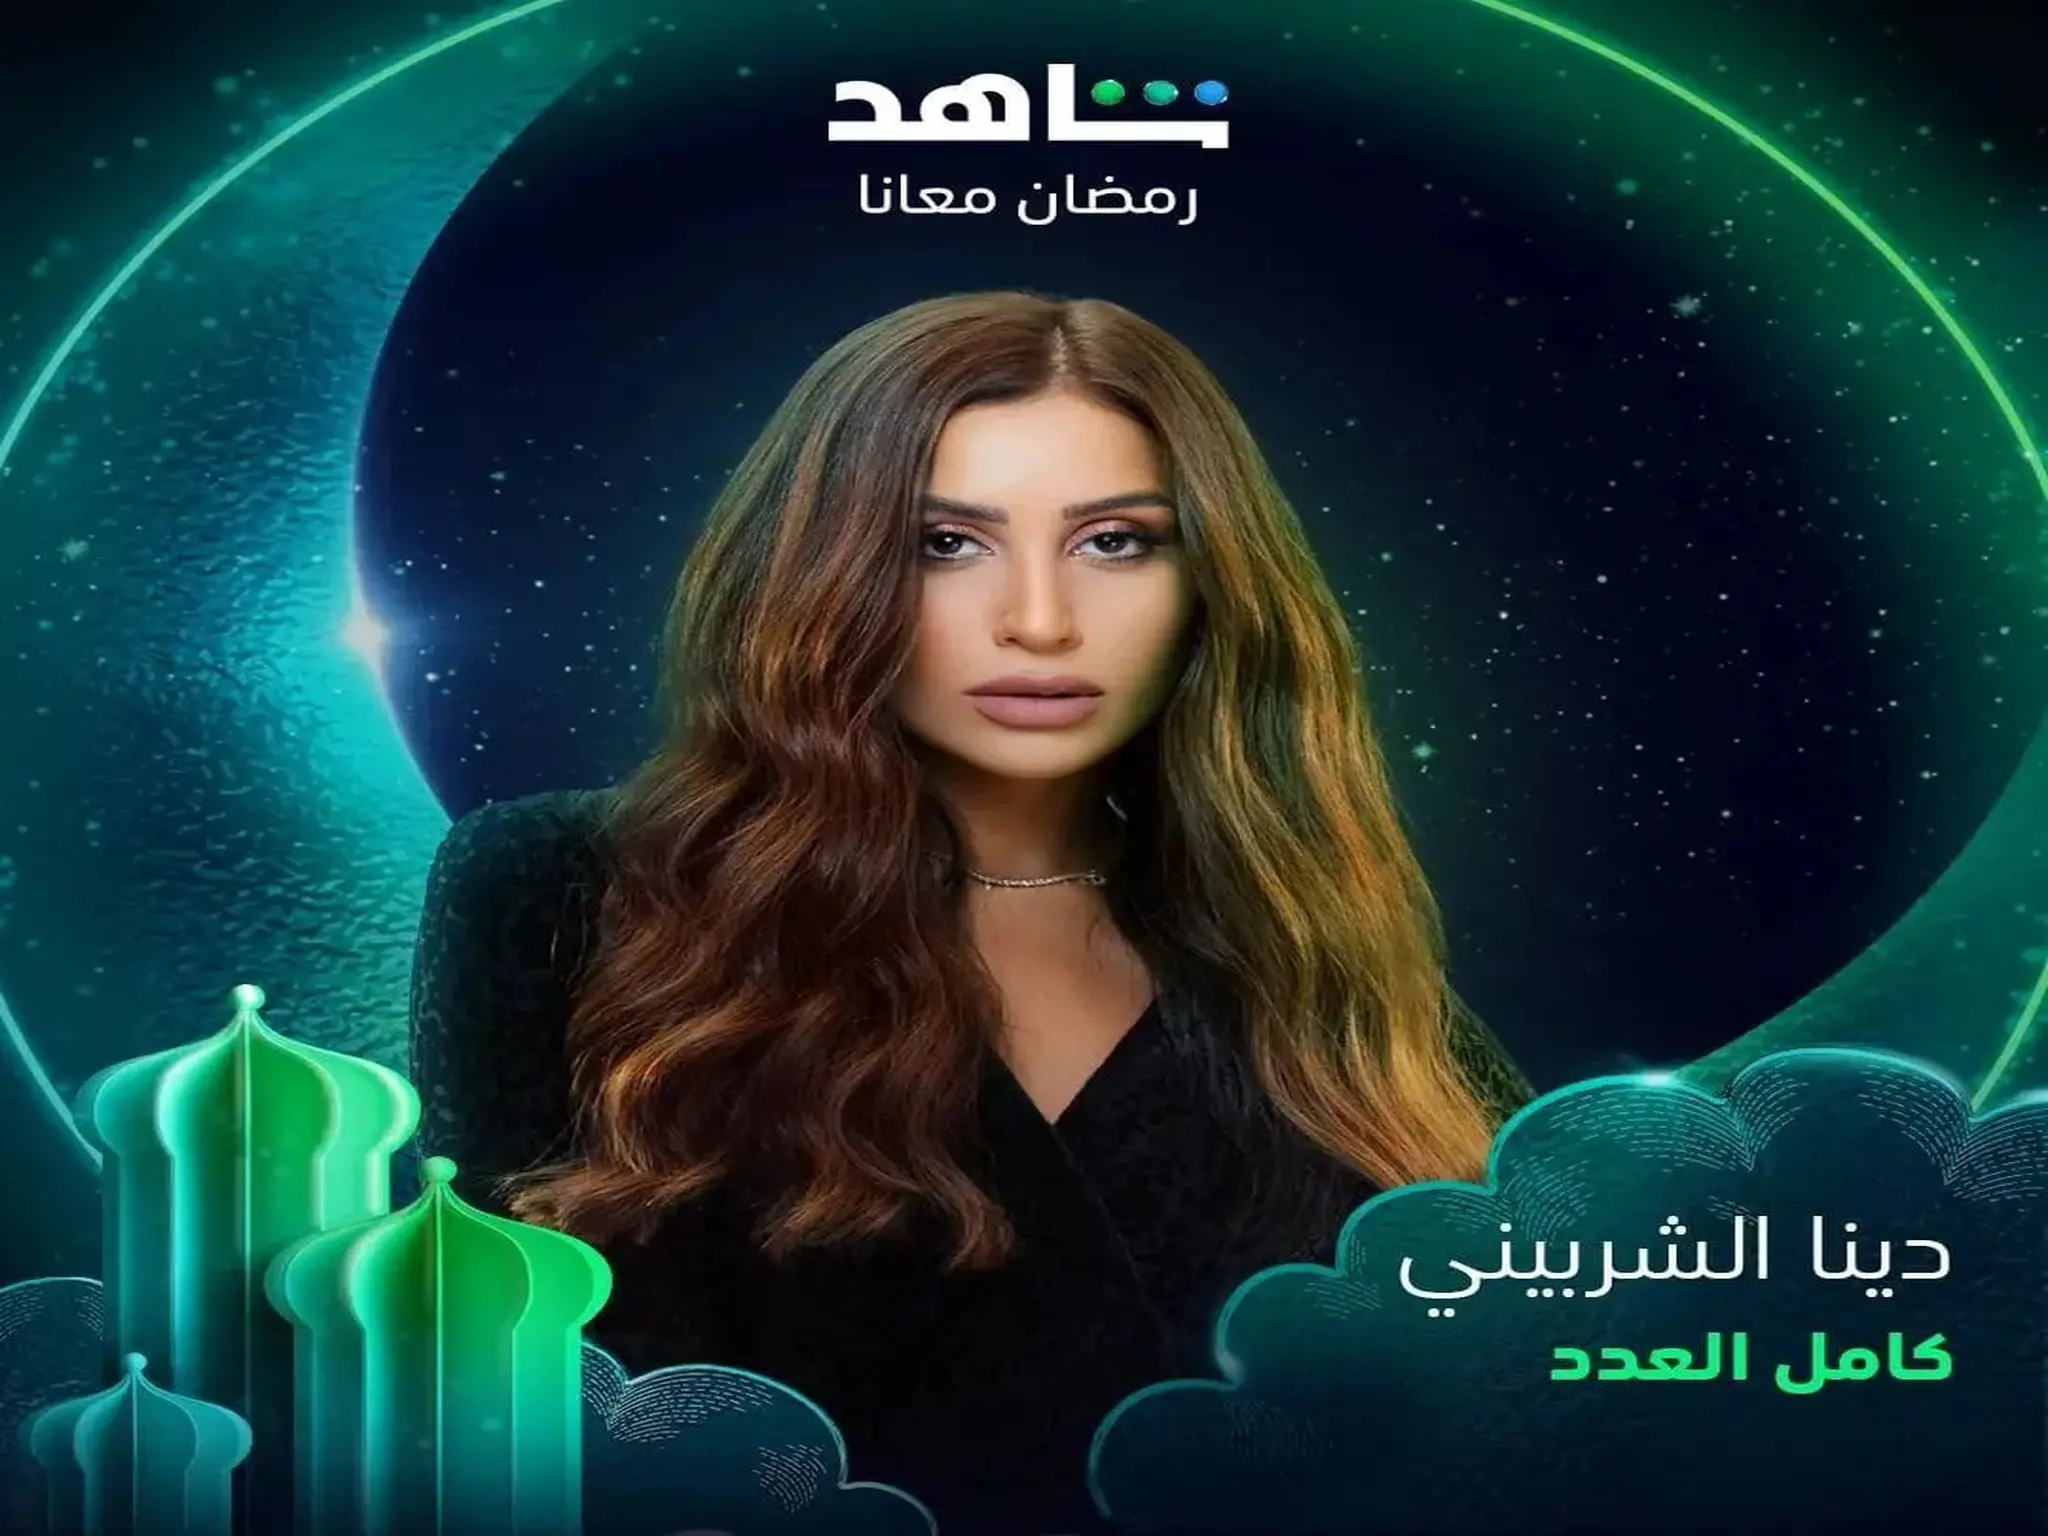 مسلسل "كامل العدد" بطولة دينا الشربينى على قناة MCB مصر فى رمضان 2023